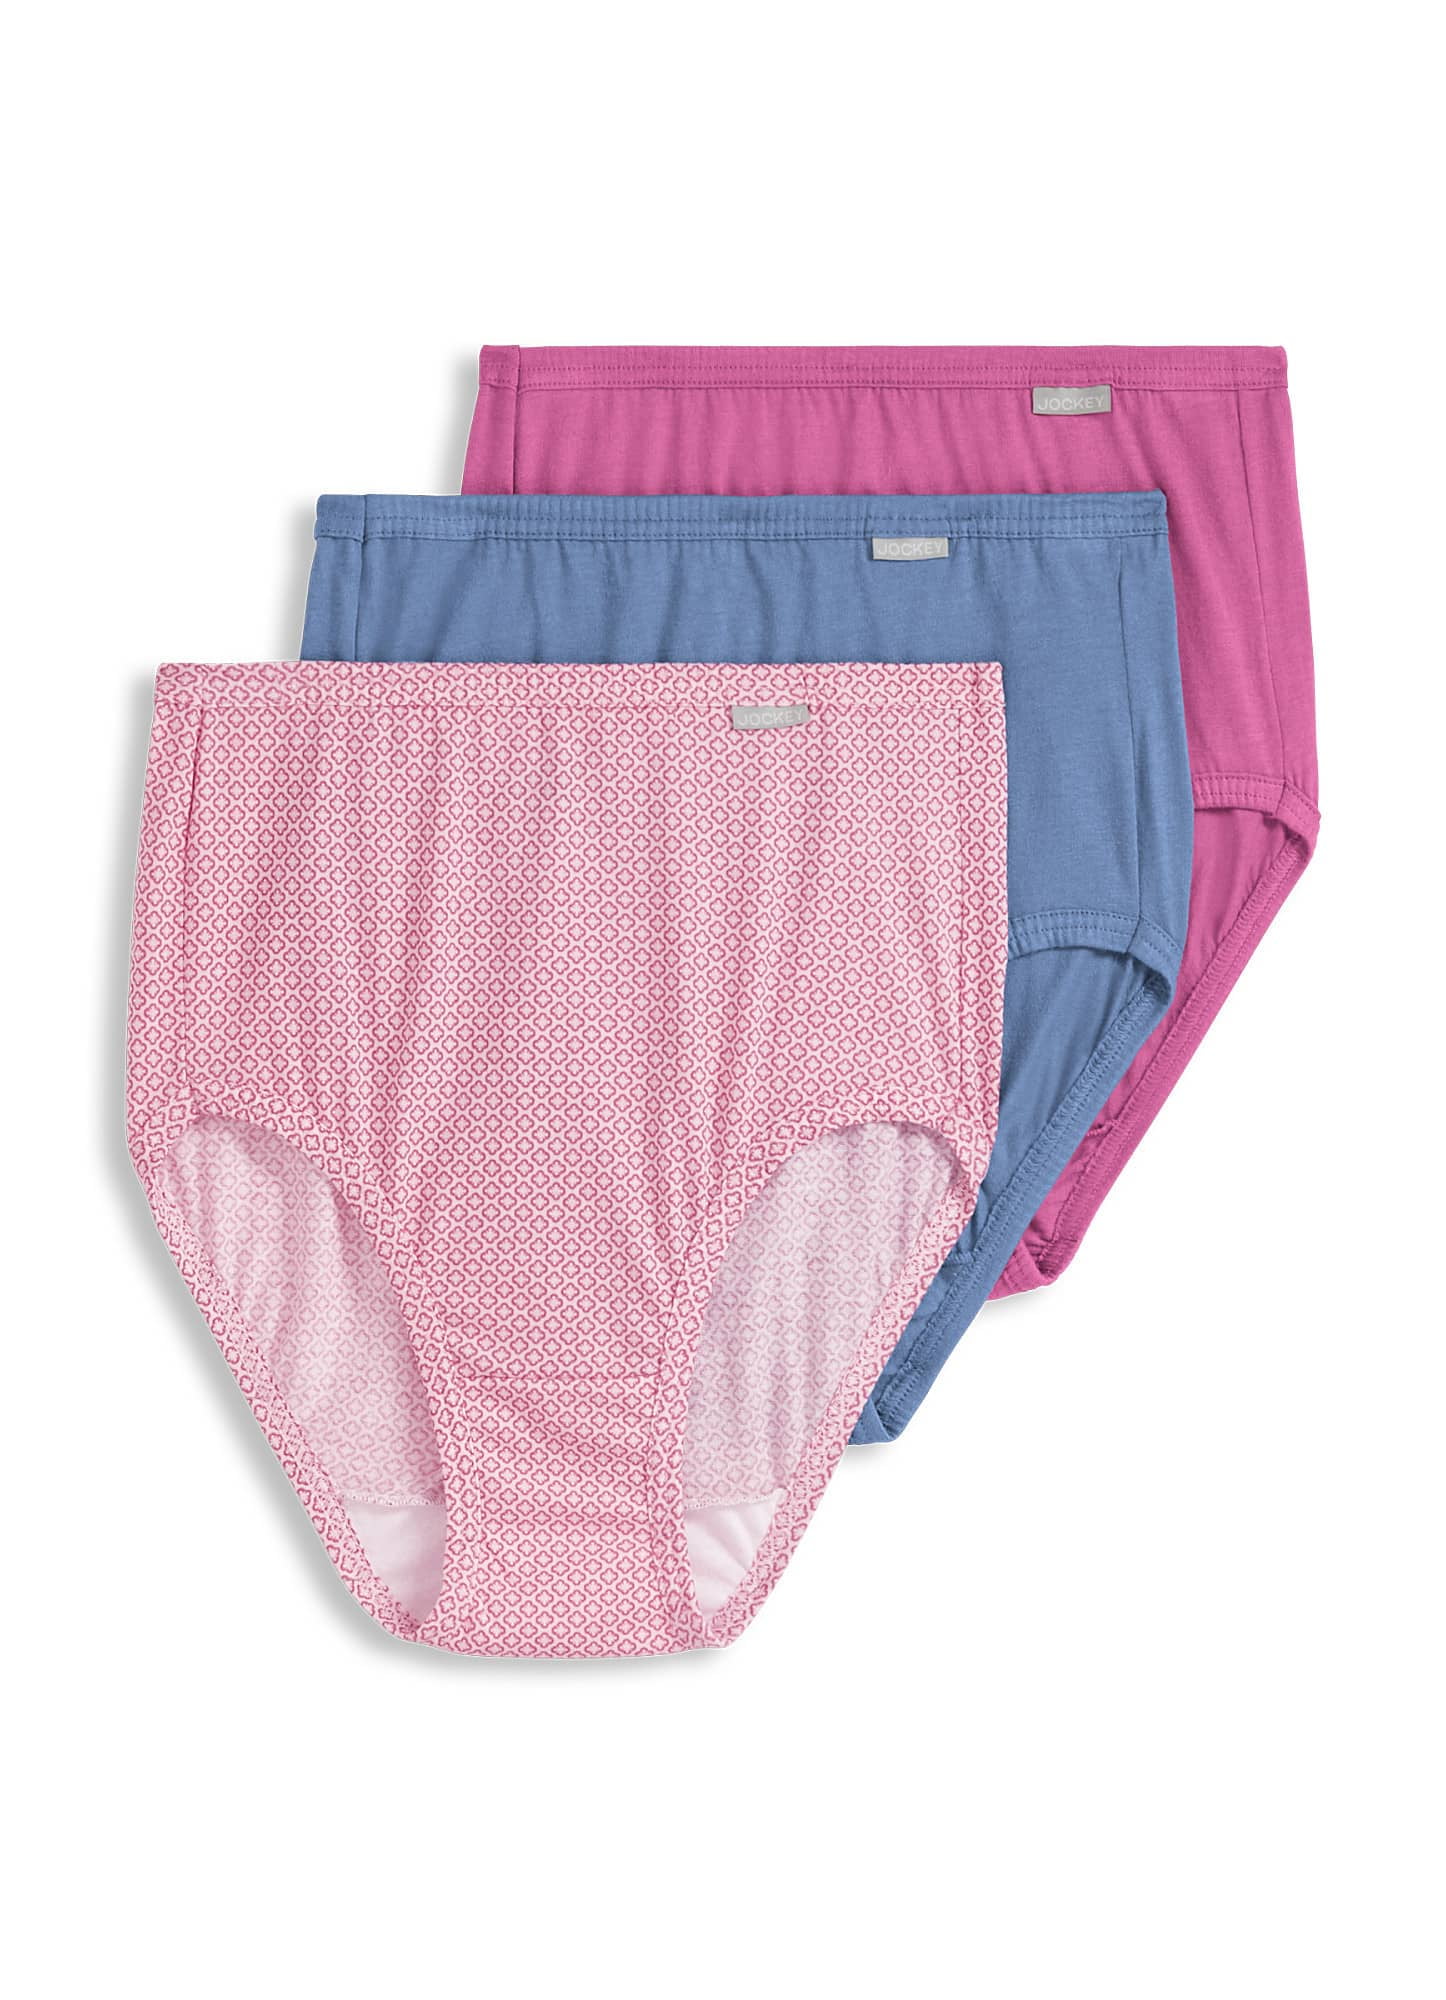 Jockey Womens Elance Brief 3 Pack Underwear Briefs 100% Cotton 5